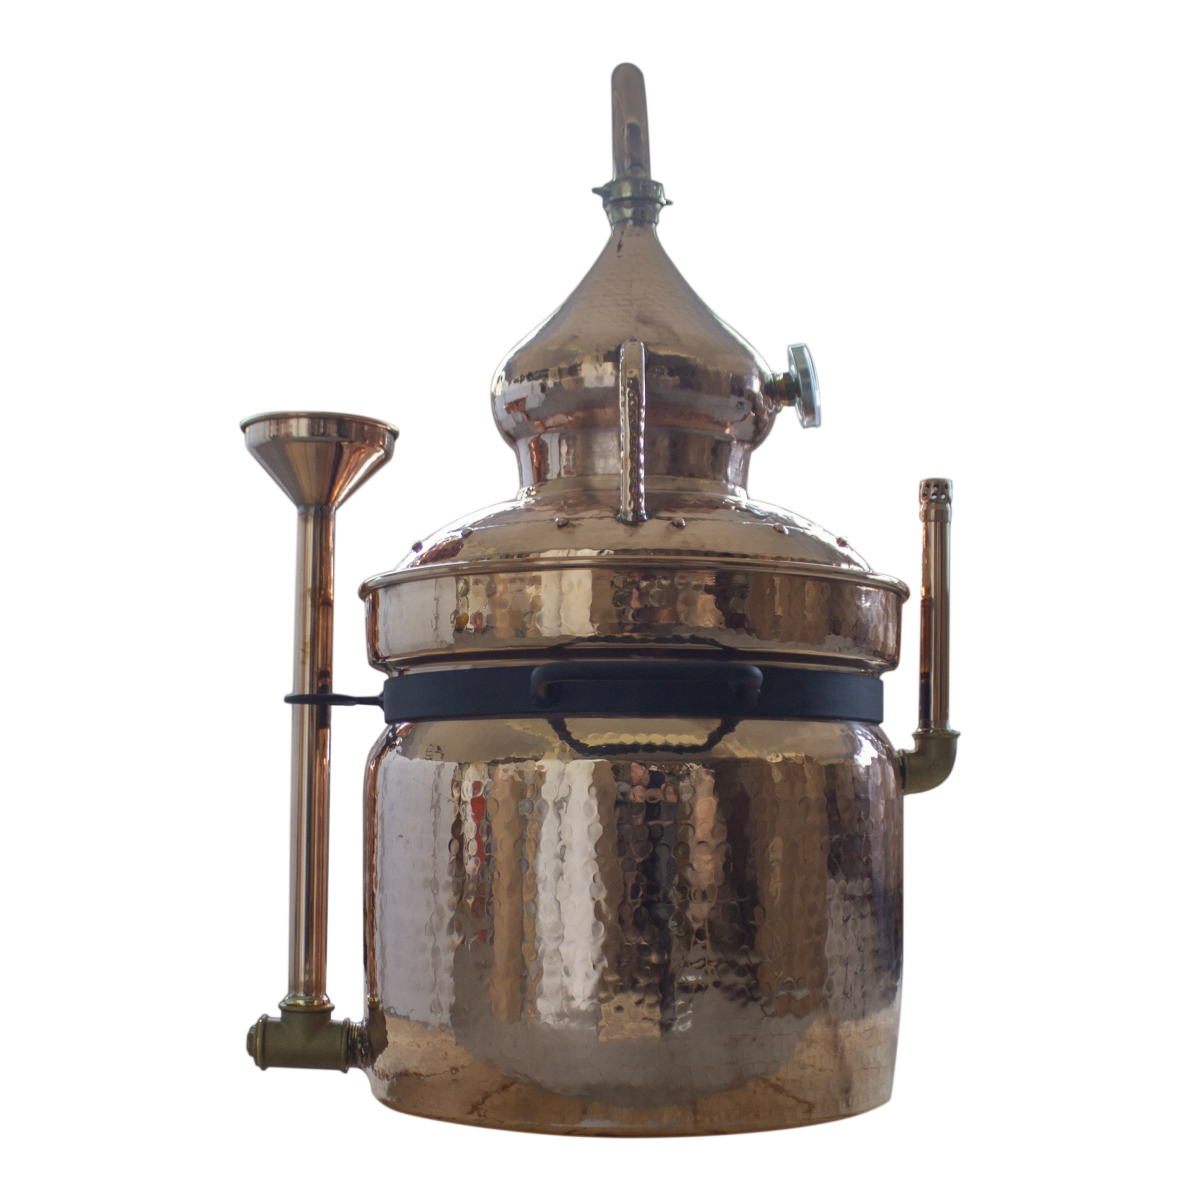 Аламбик CopperCrafts на водяной бане 15 литров, с термометром и ситом